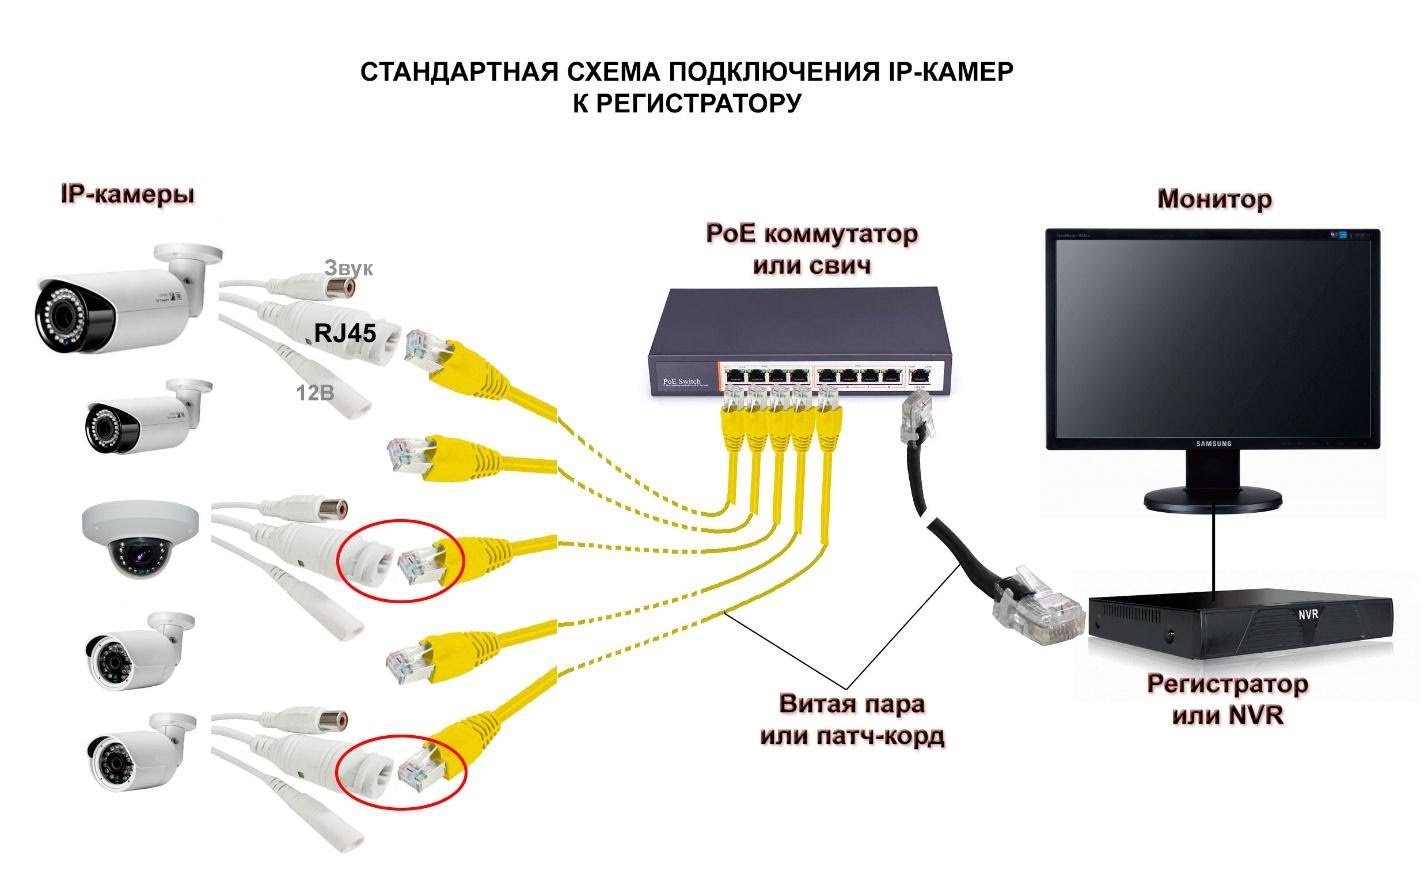 Способы подключения видеорегистратора к компьютеру и создания удаленного доступа через интернет